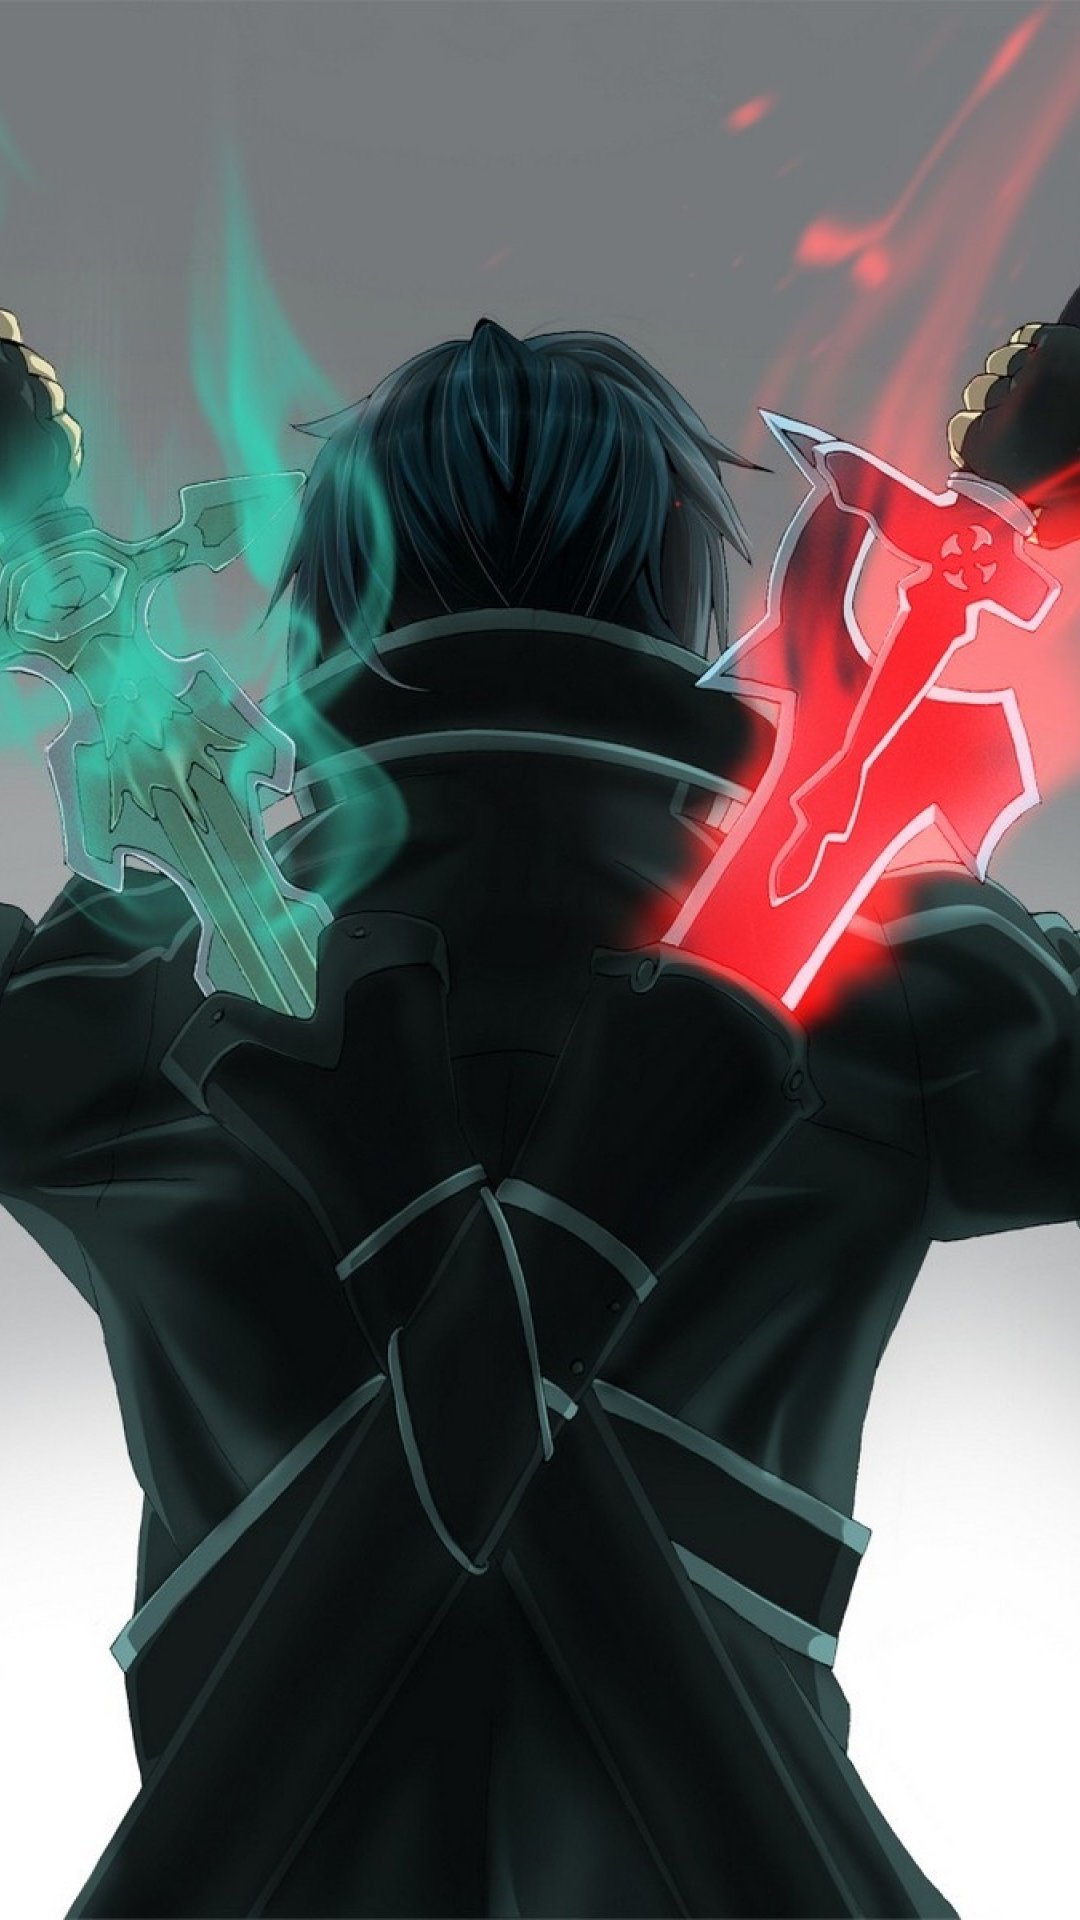 Fondos de pantalla Anime Kirito Sword Art Online Vertical